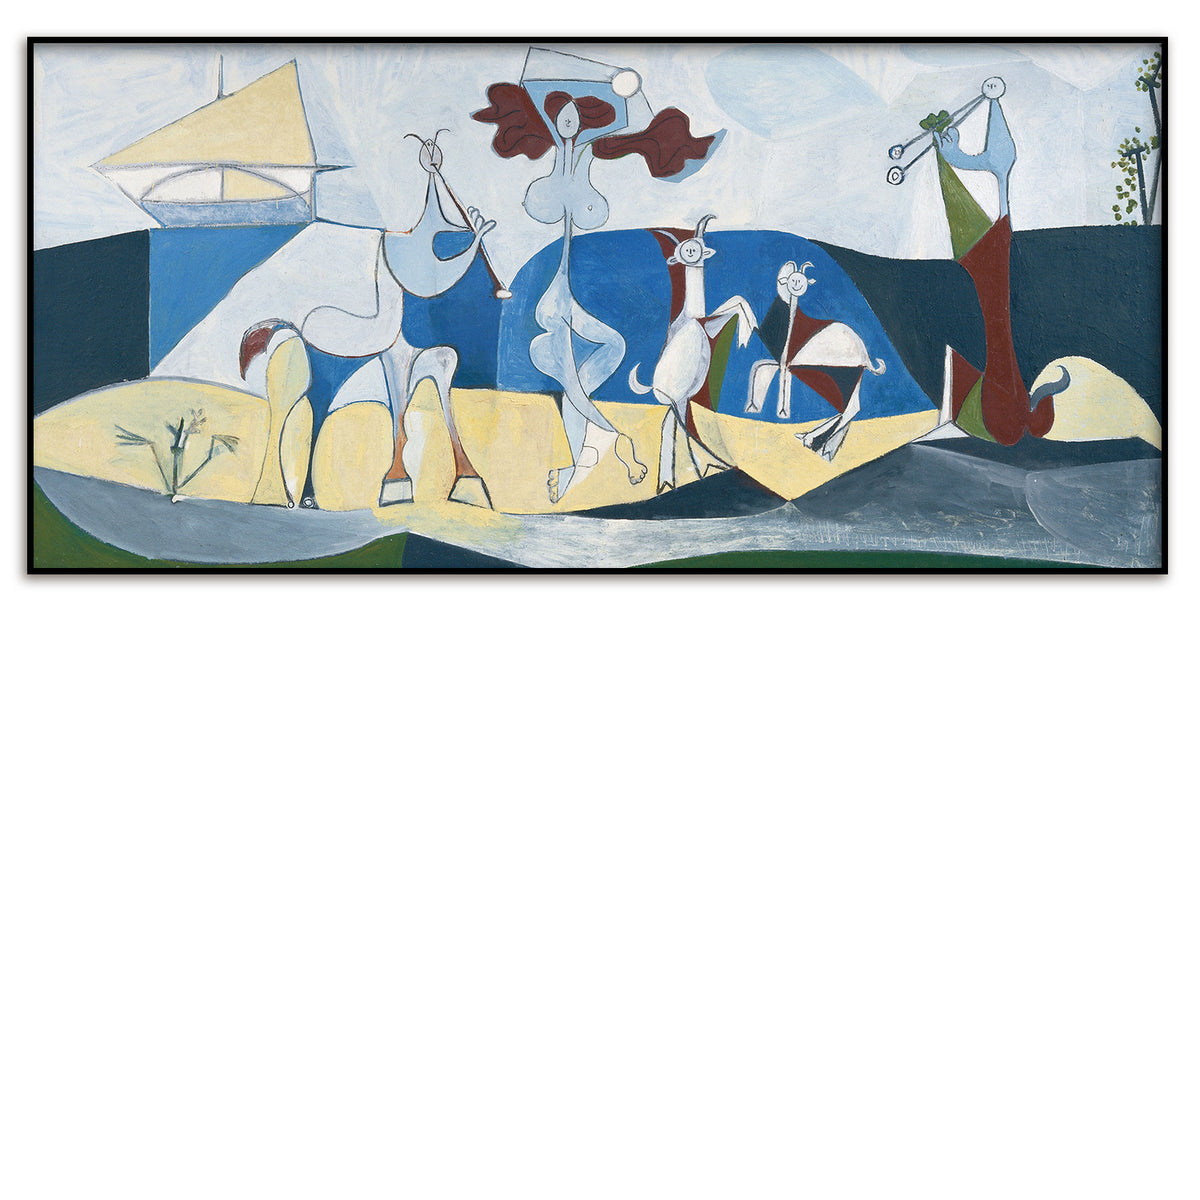 Tirage d'Art / Picasso / Edition Limitée / La Joie de Vivre, 1946 / 98